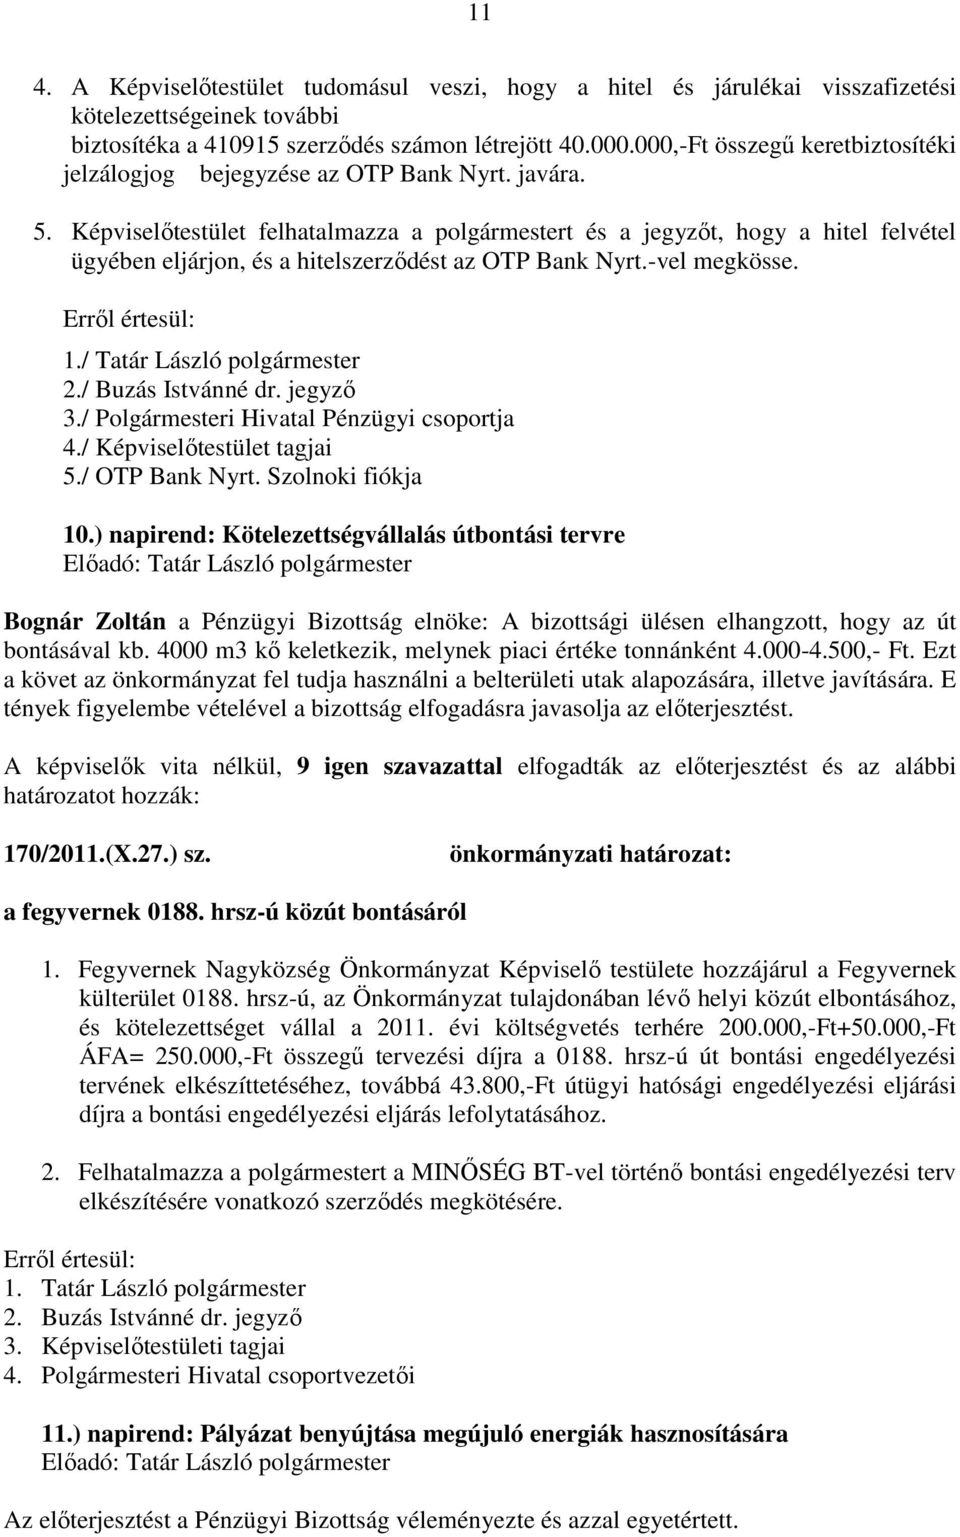 Képviselőtestület felhatalmazza a polgármestert és a jegyzőt, hogy a hitel felvétel ügyében eljárjon, és a hitelszerződést az OTP Bank Nyrt.-vel megkösse. 1./ Tatár László polgármester 2.